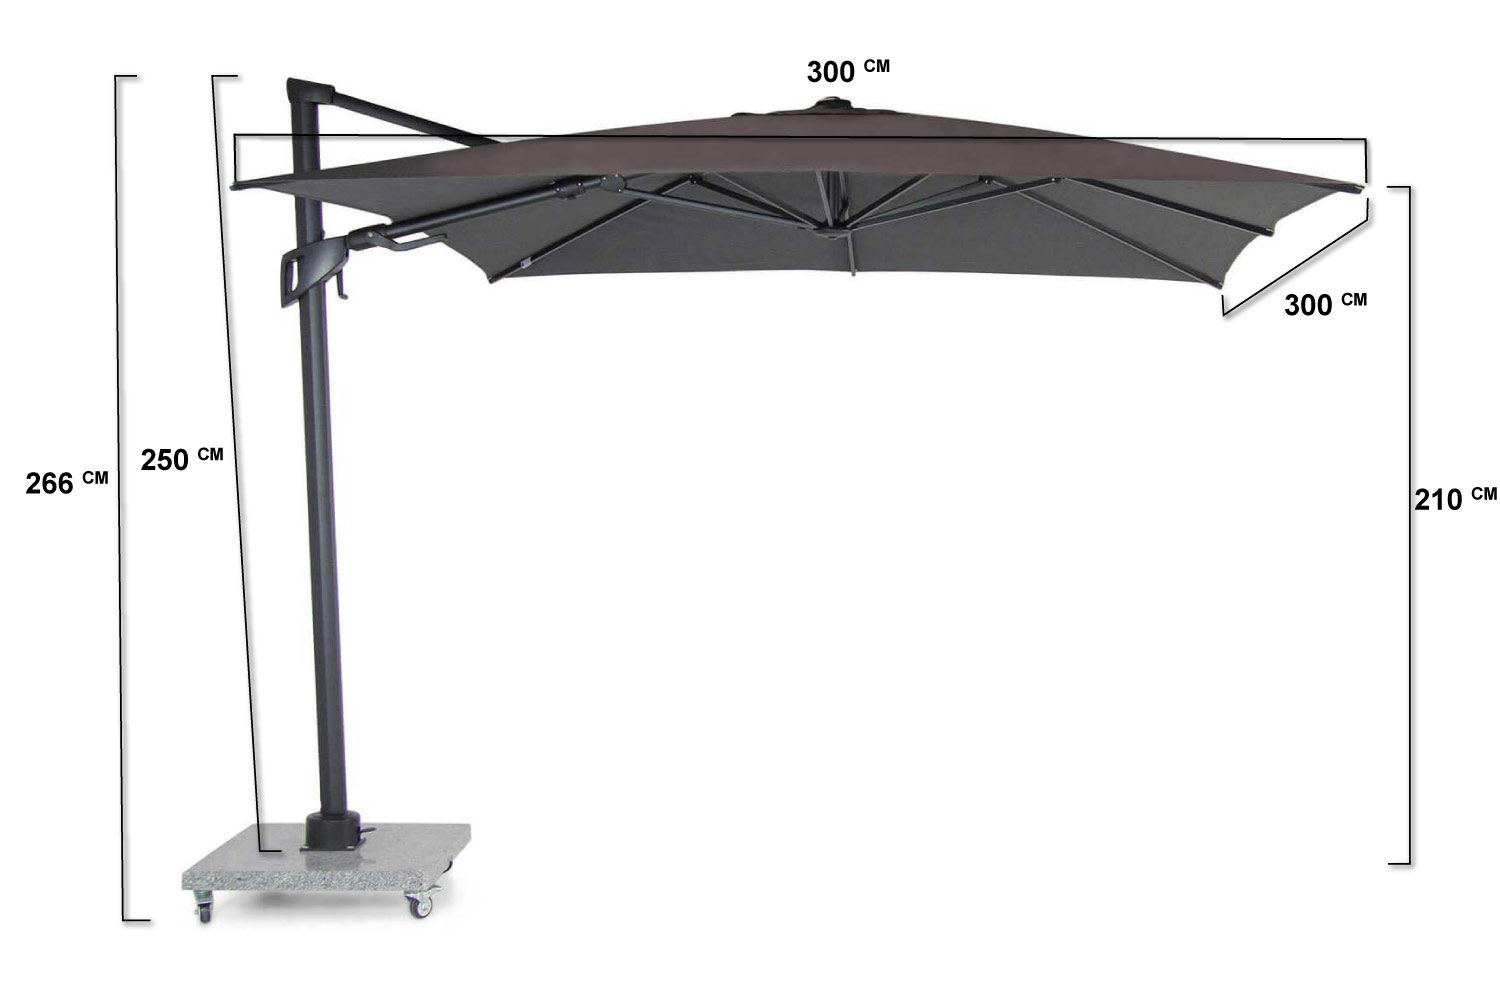 Santika Belize Deluxe parasol 300 cm x 300 cm antraciet frame/dark grey 